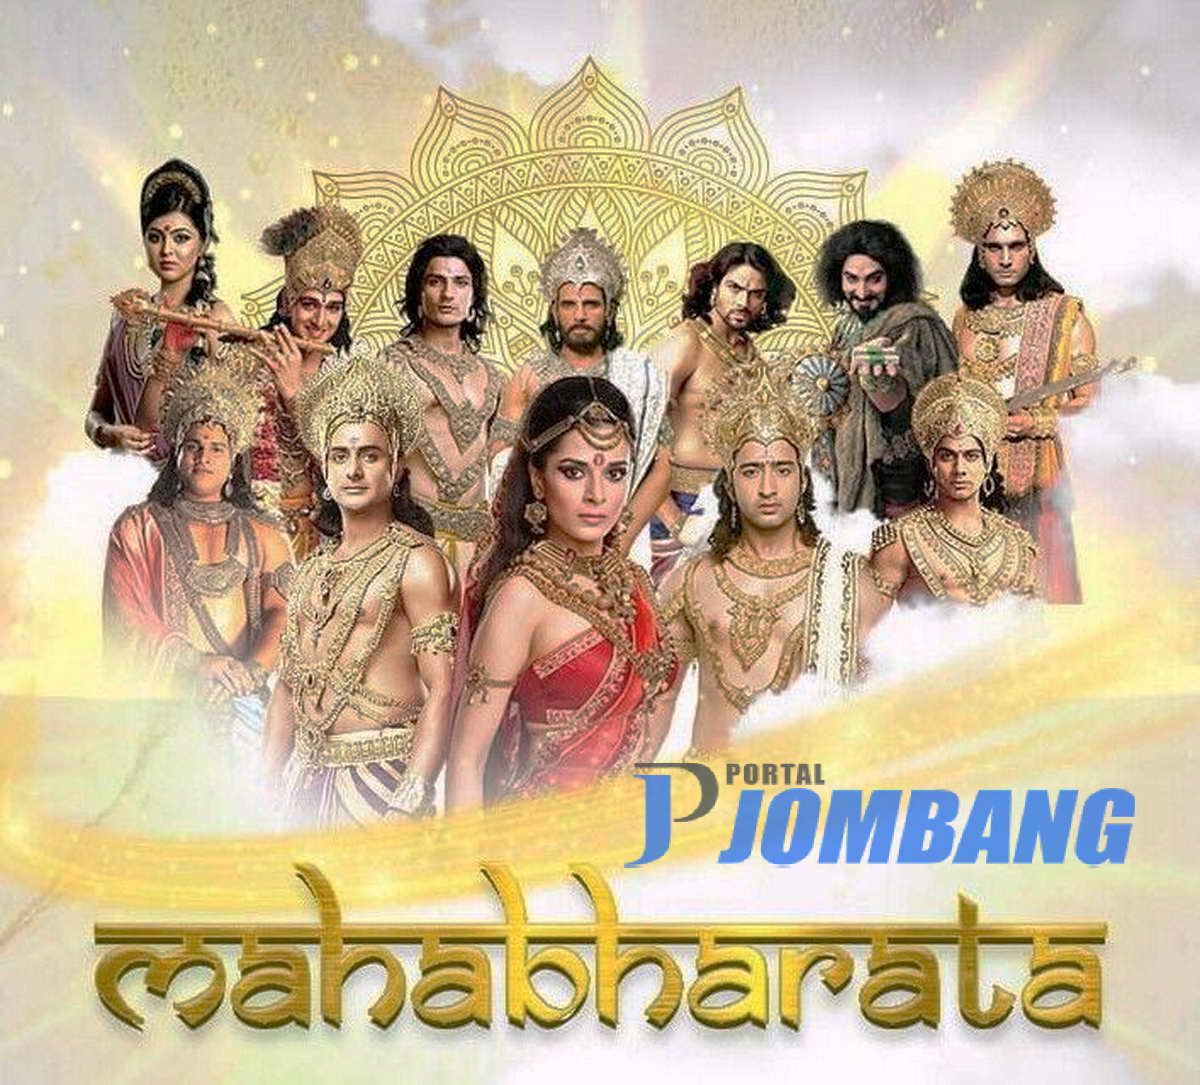 streaming mahabharata bahasa indonesia